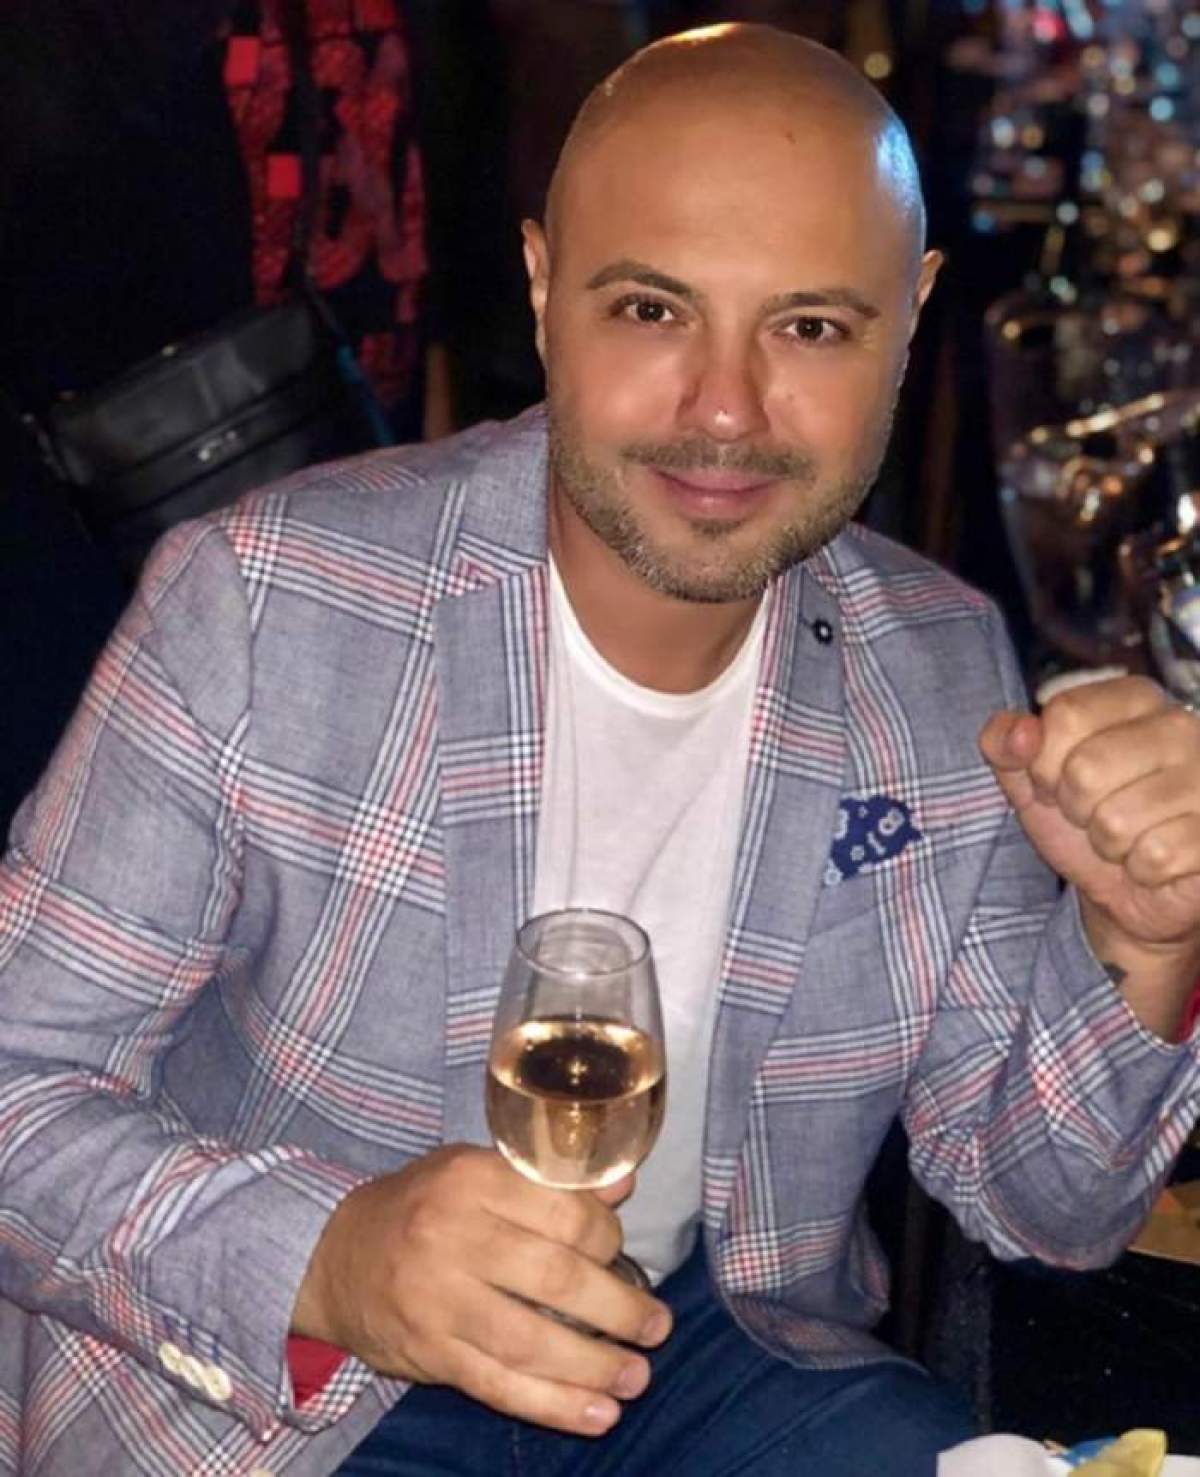 Mihai Mitoșeru, purtând un tricou alb și un sacou mov, se afla la o petrecere, zâmbitor, ținând un pahar cu vin în mână